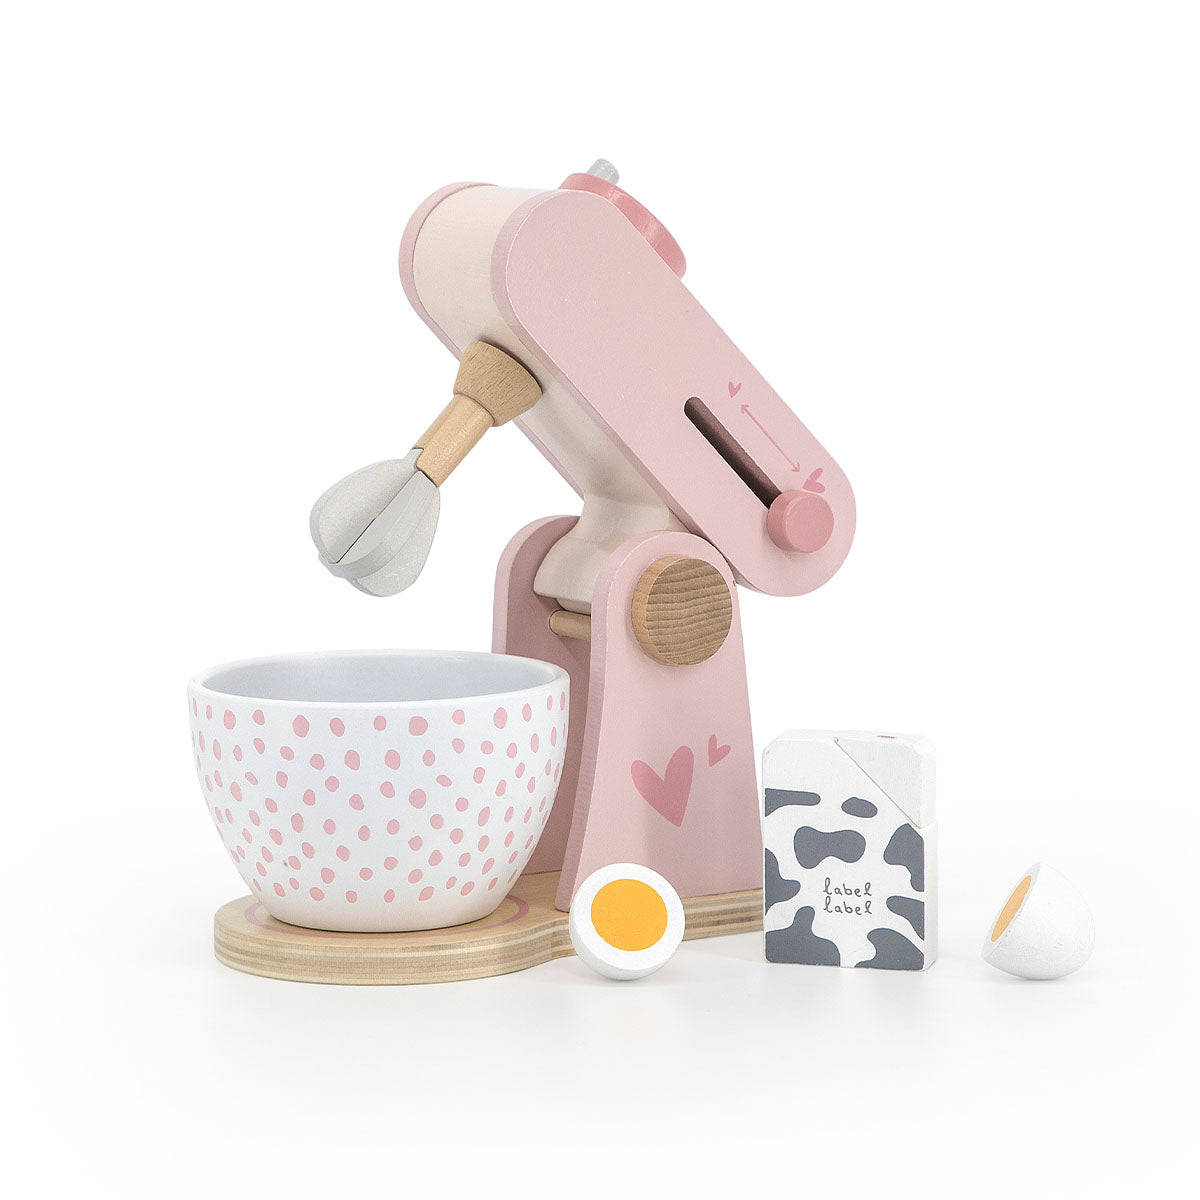 Duik de (speelgoed)keuken in met deze prachtige Label Label keukenmachine roze! Met deze houten blender kan jouw kindje de lekkerste fantasietaarten, cakes en muffins maken. De mixer is gemaakt van duurzaam FSC-hout. VanZus.